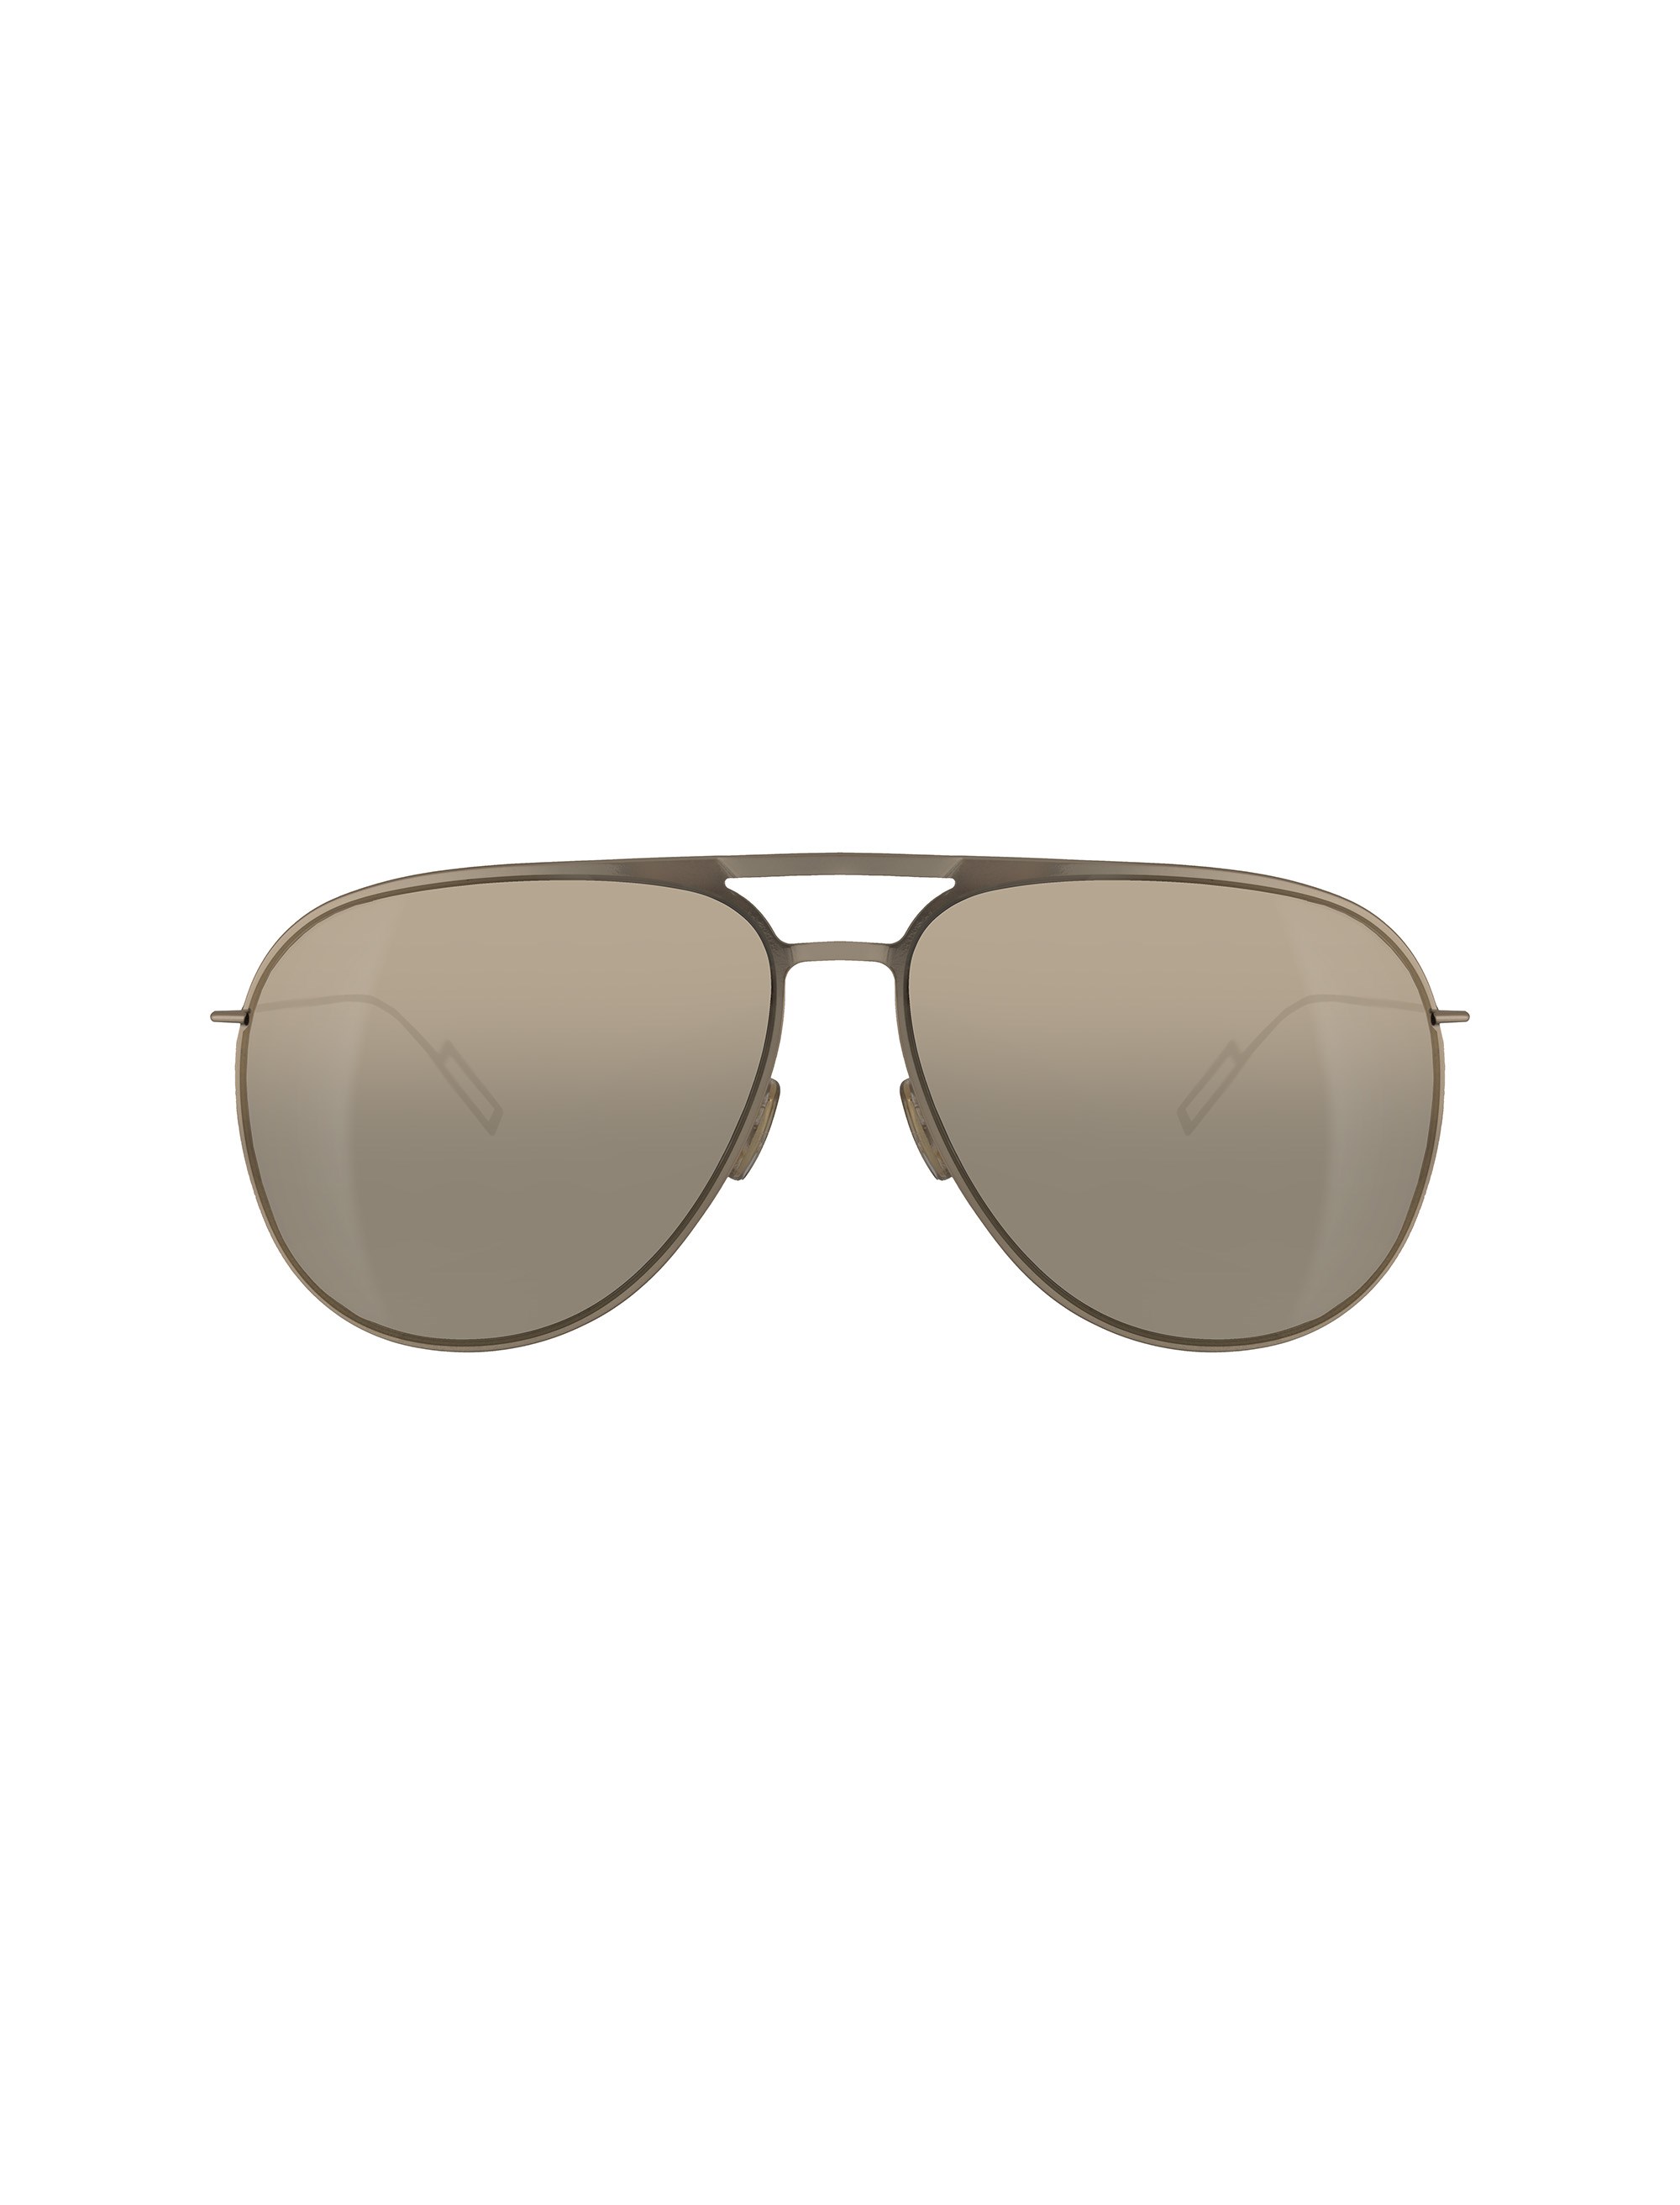 عینک آفتابی خلبانی مردانه - دیور - طلايي - 1